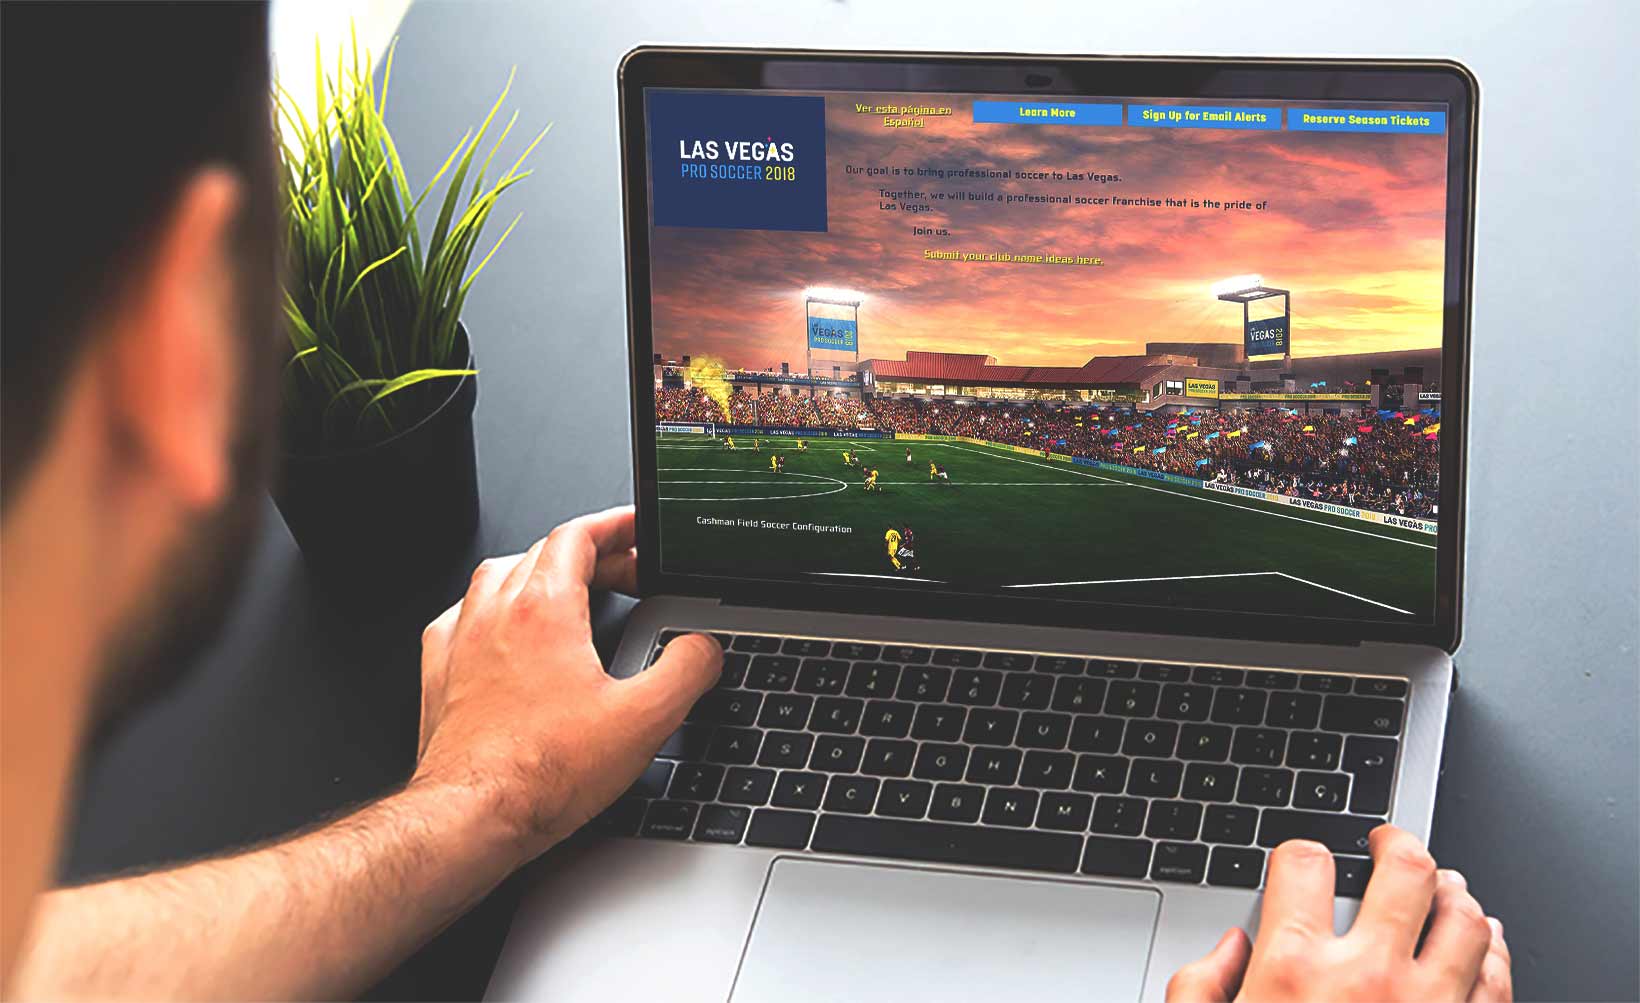 Sports fan looking at Las Vegas Pro Soccer 2018's website on a laptop